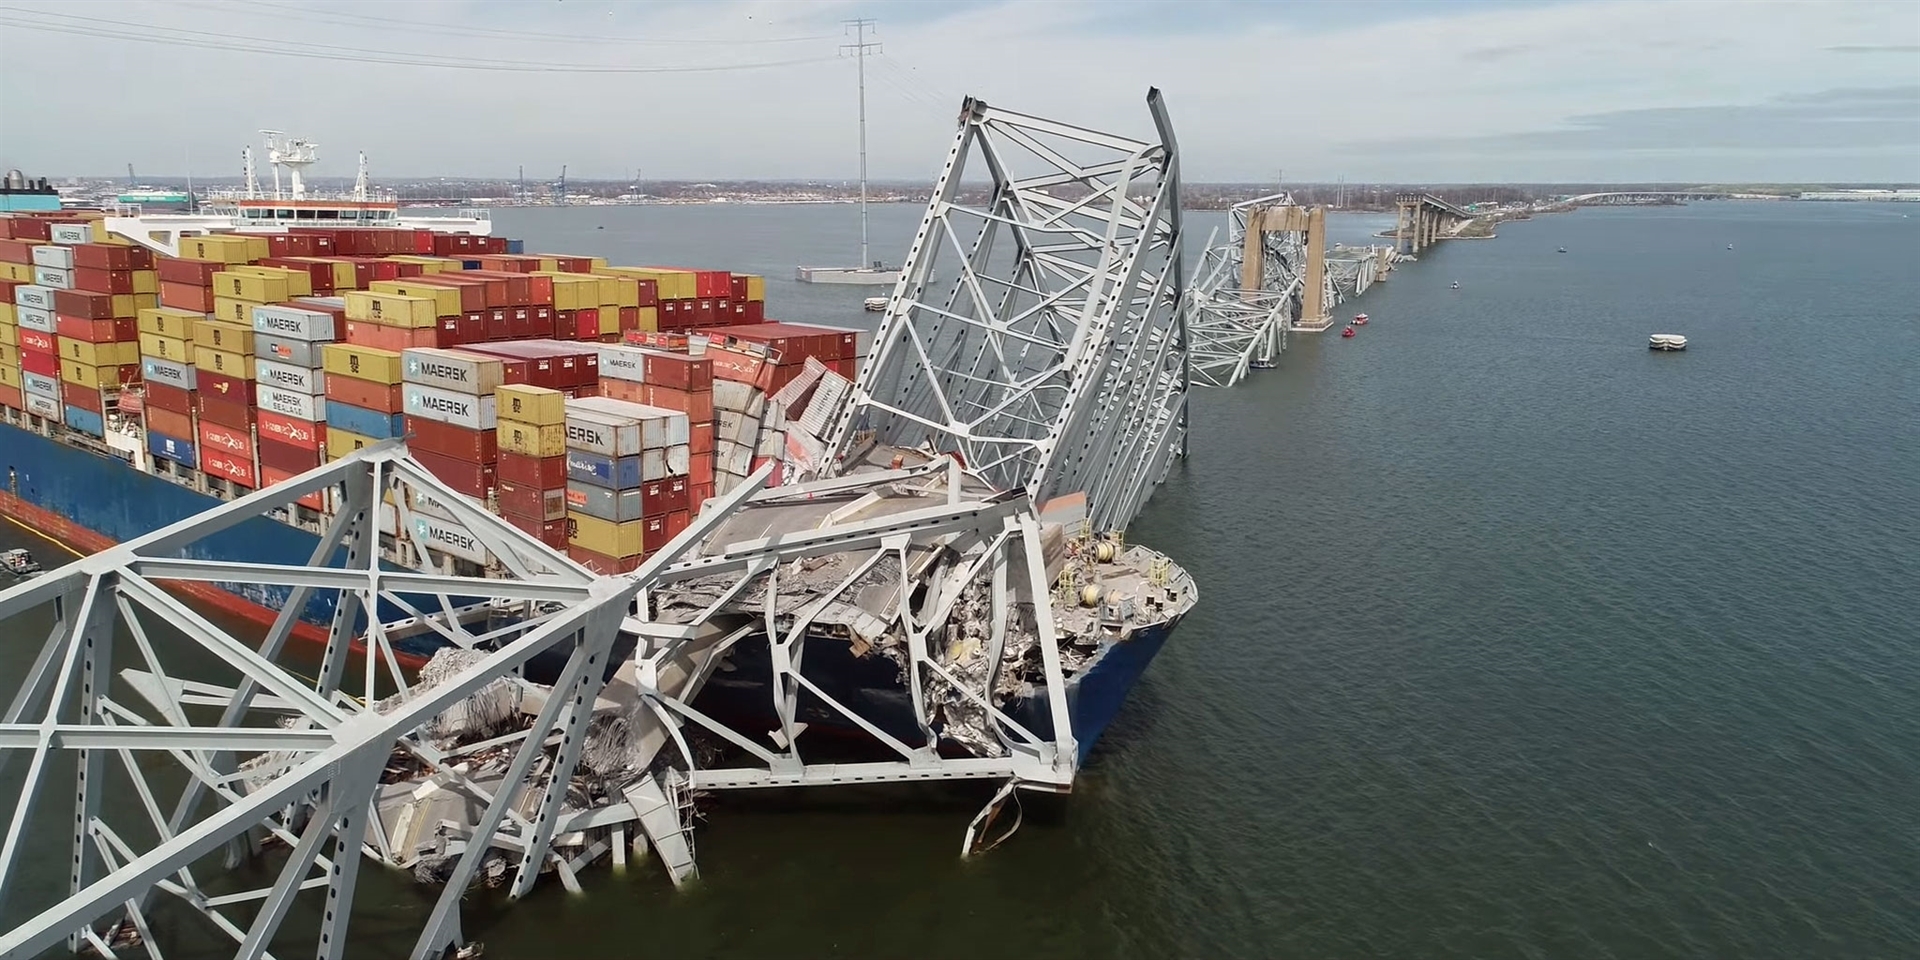 proč spadl most v baltimoru? nedostatečná ochrana pilíře, příhradová konstrukce a technické problémy lodi